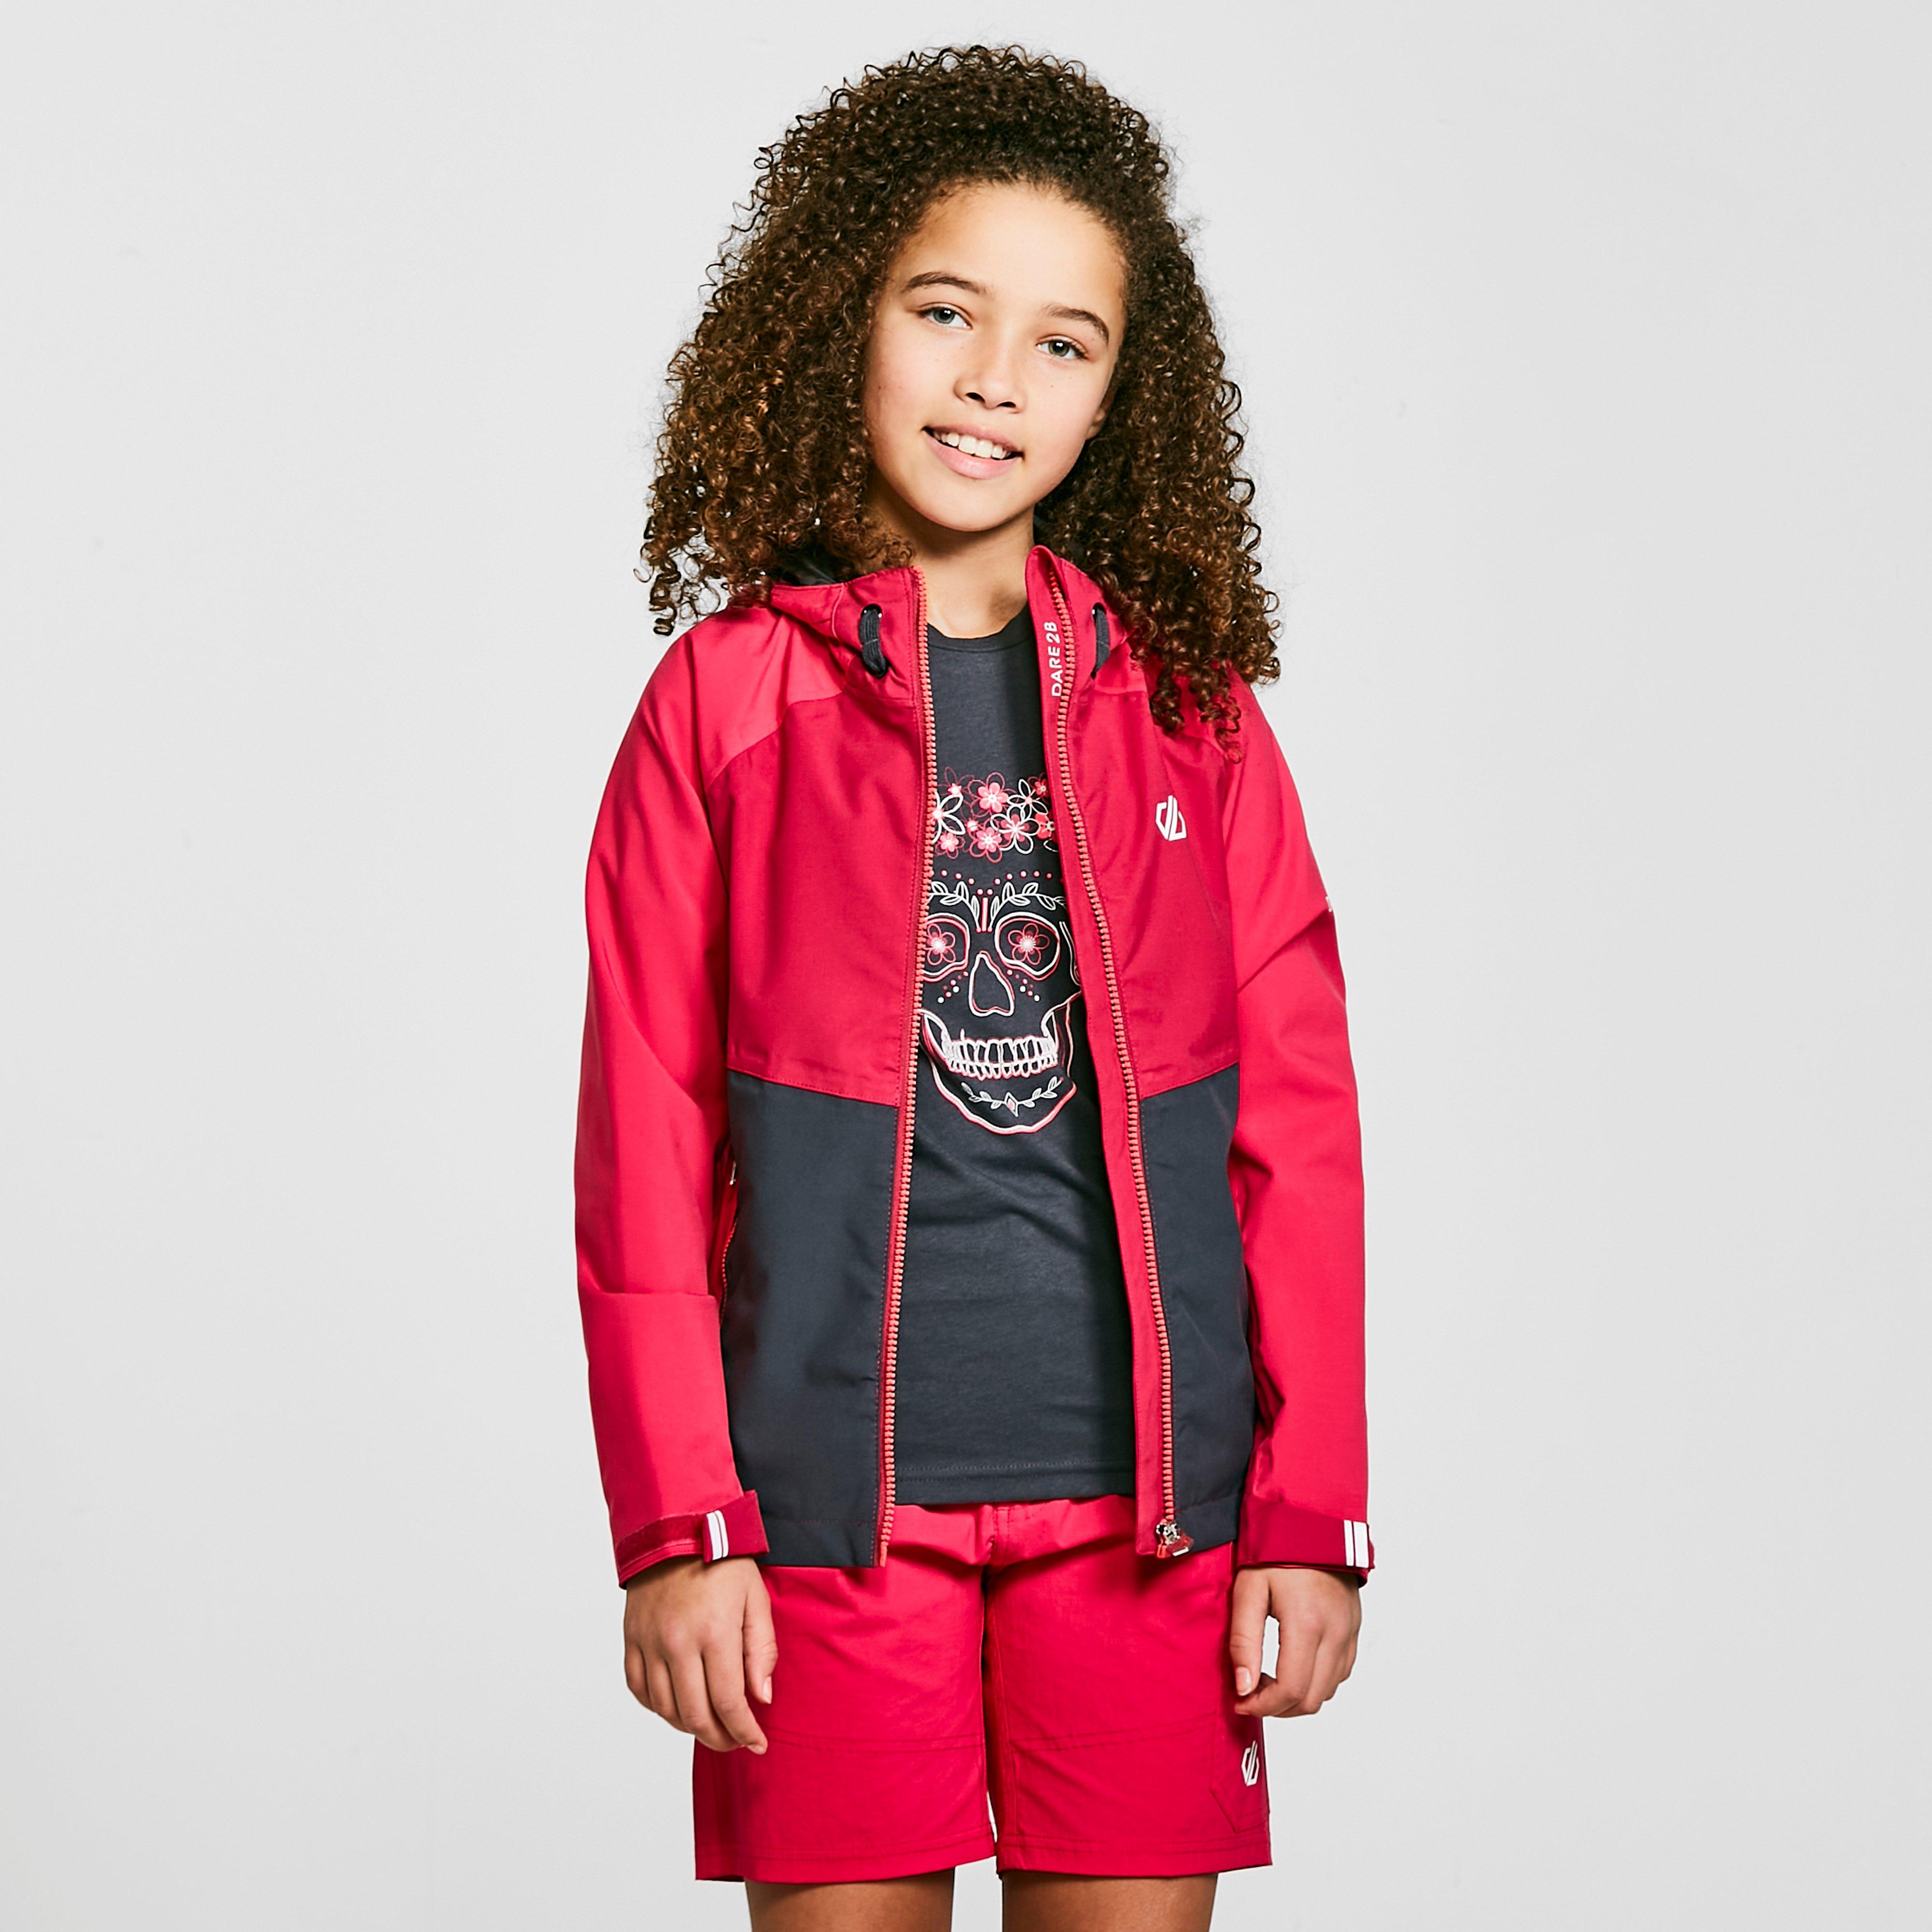 Dare 2b Kids In The Lead Ii Waterproof Jacket - Pink/black  Pink/black